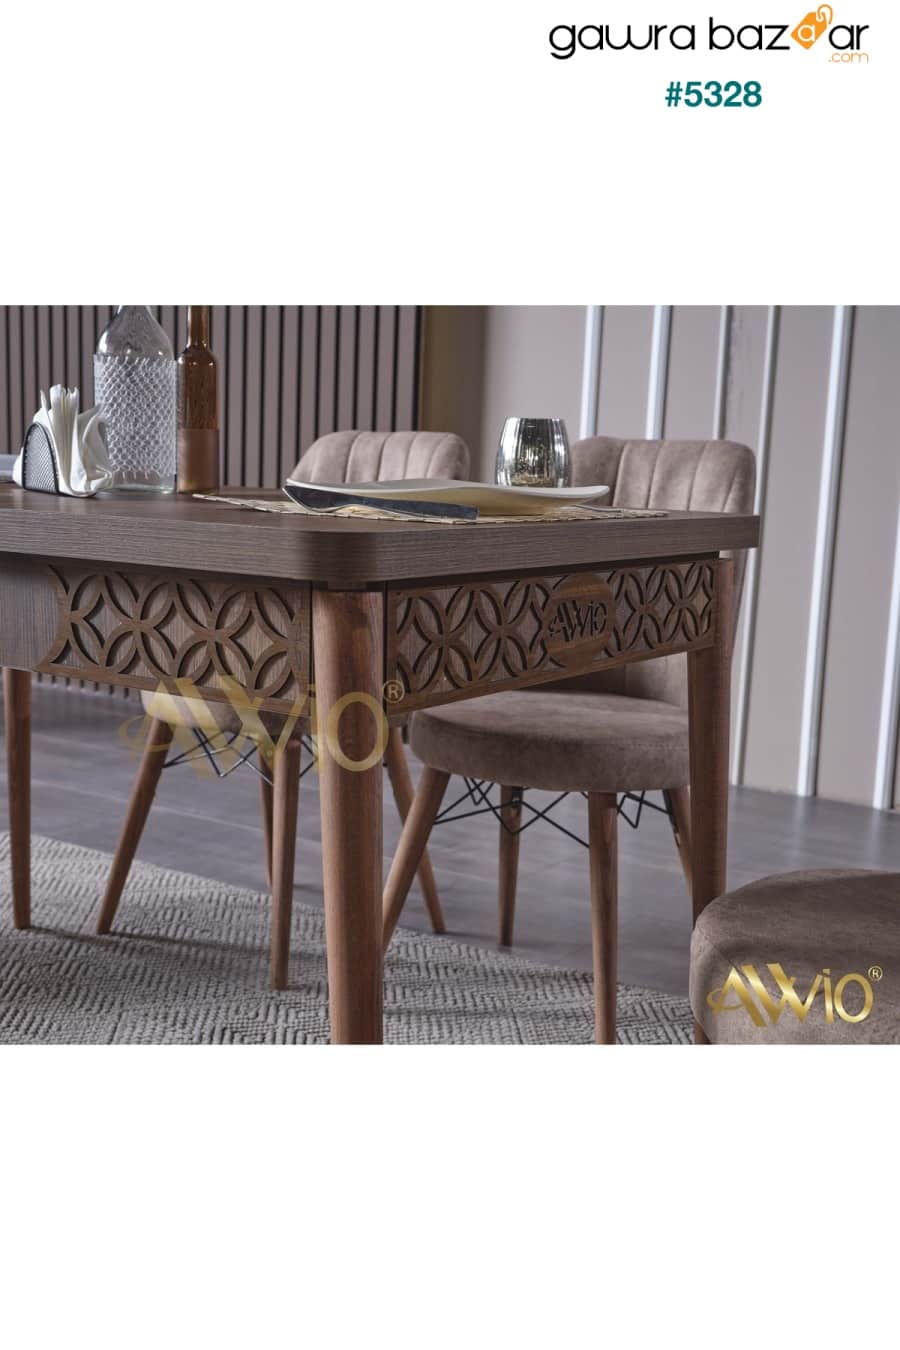 طاولة مطبخ من خشب الجوز قابلة للتمديد من سوميلا ، طاولة طعام قابلة للتمديد Avvio 2